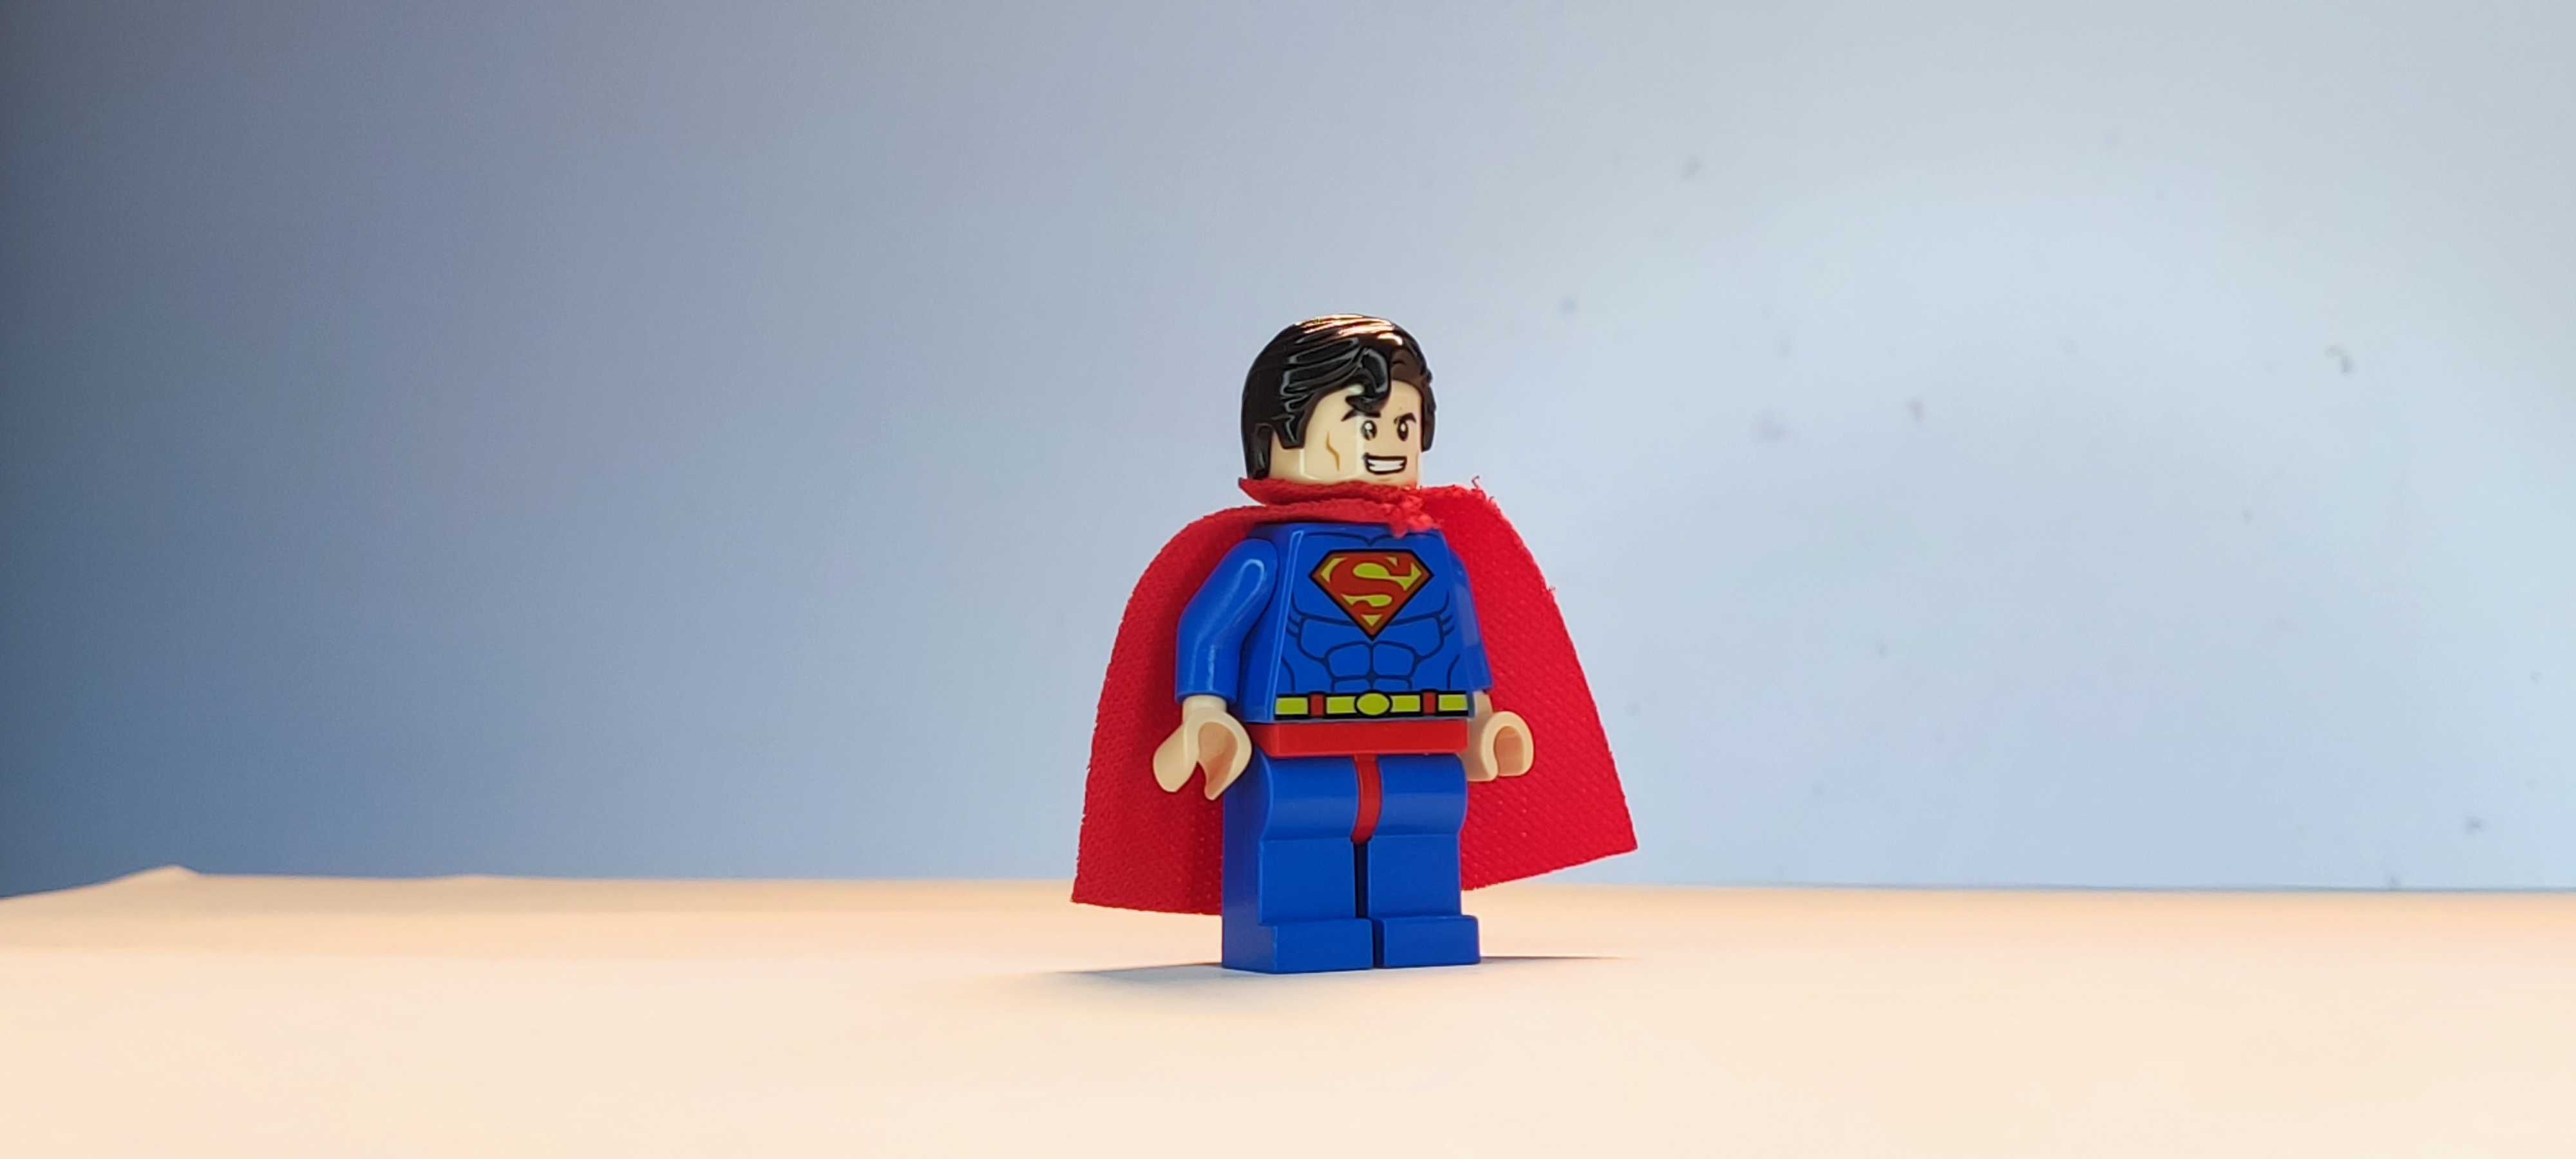 Minifigura Lego - Superman